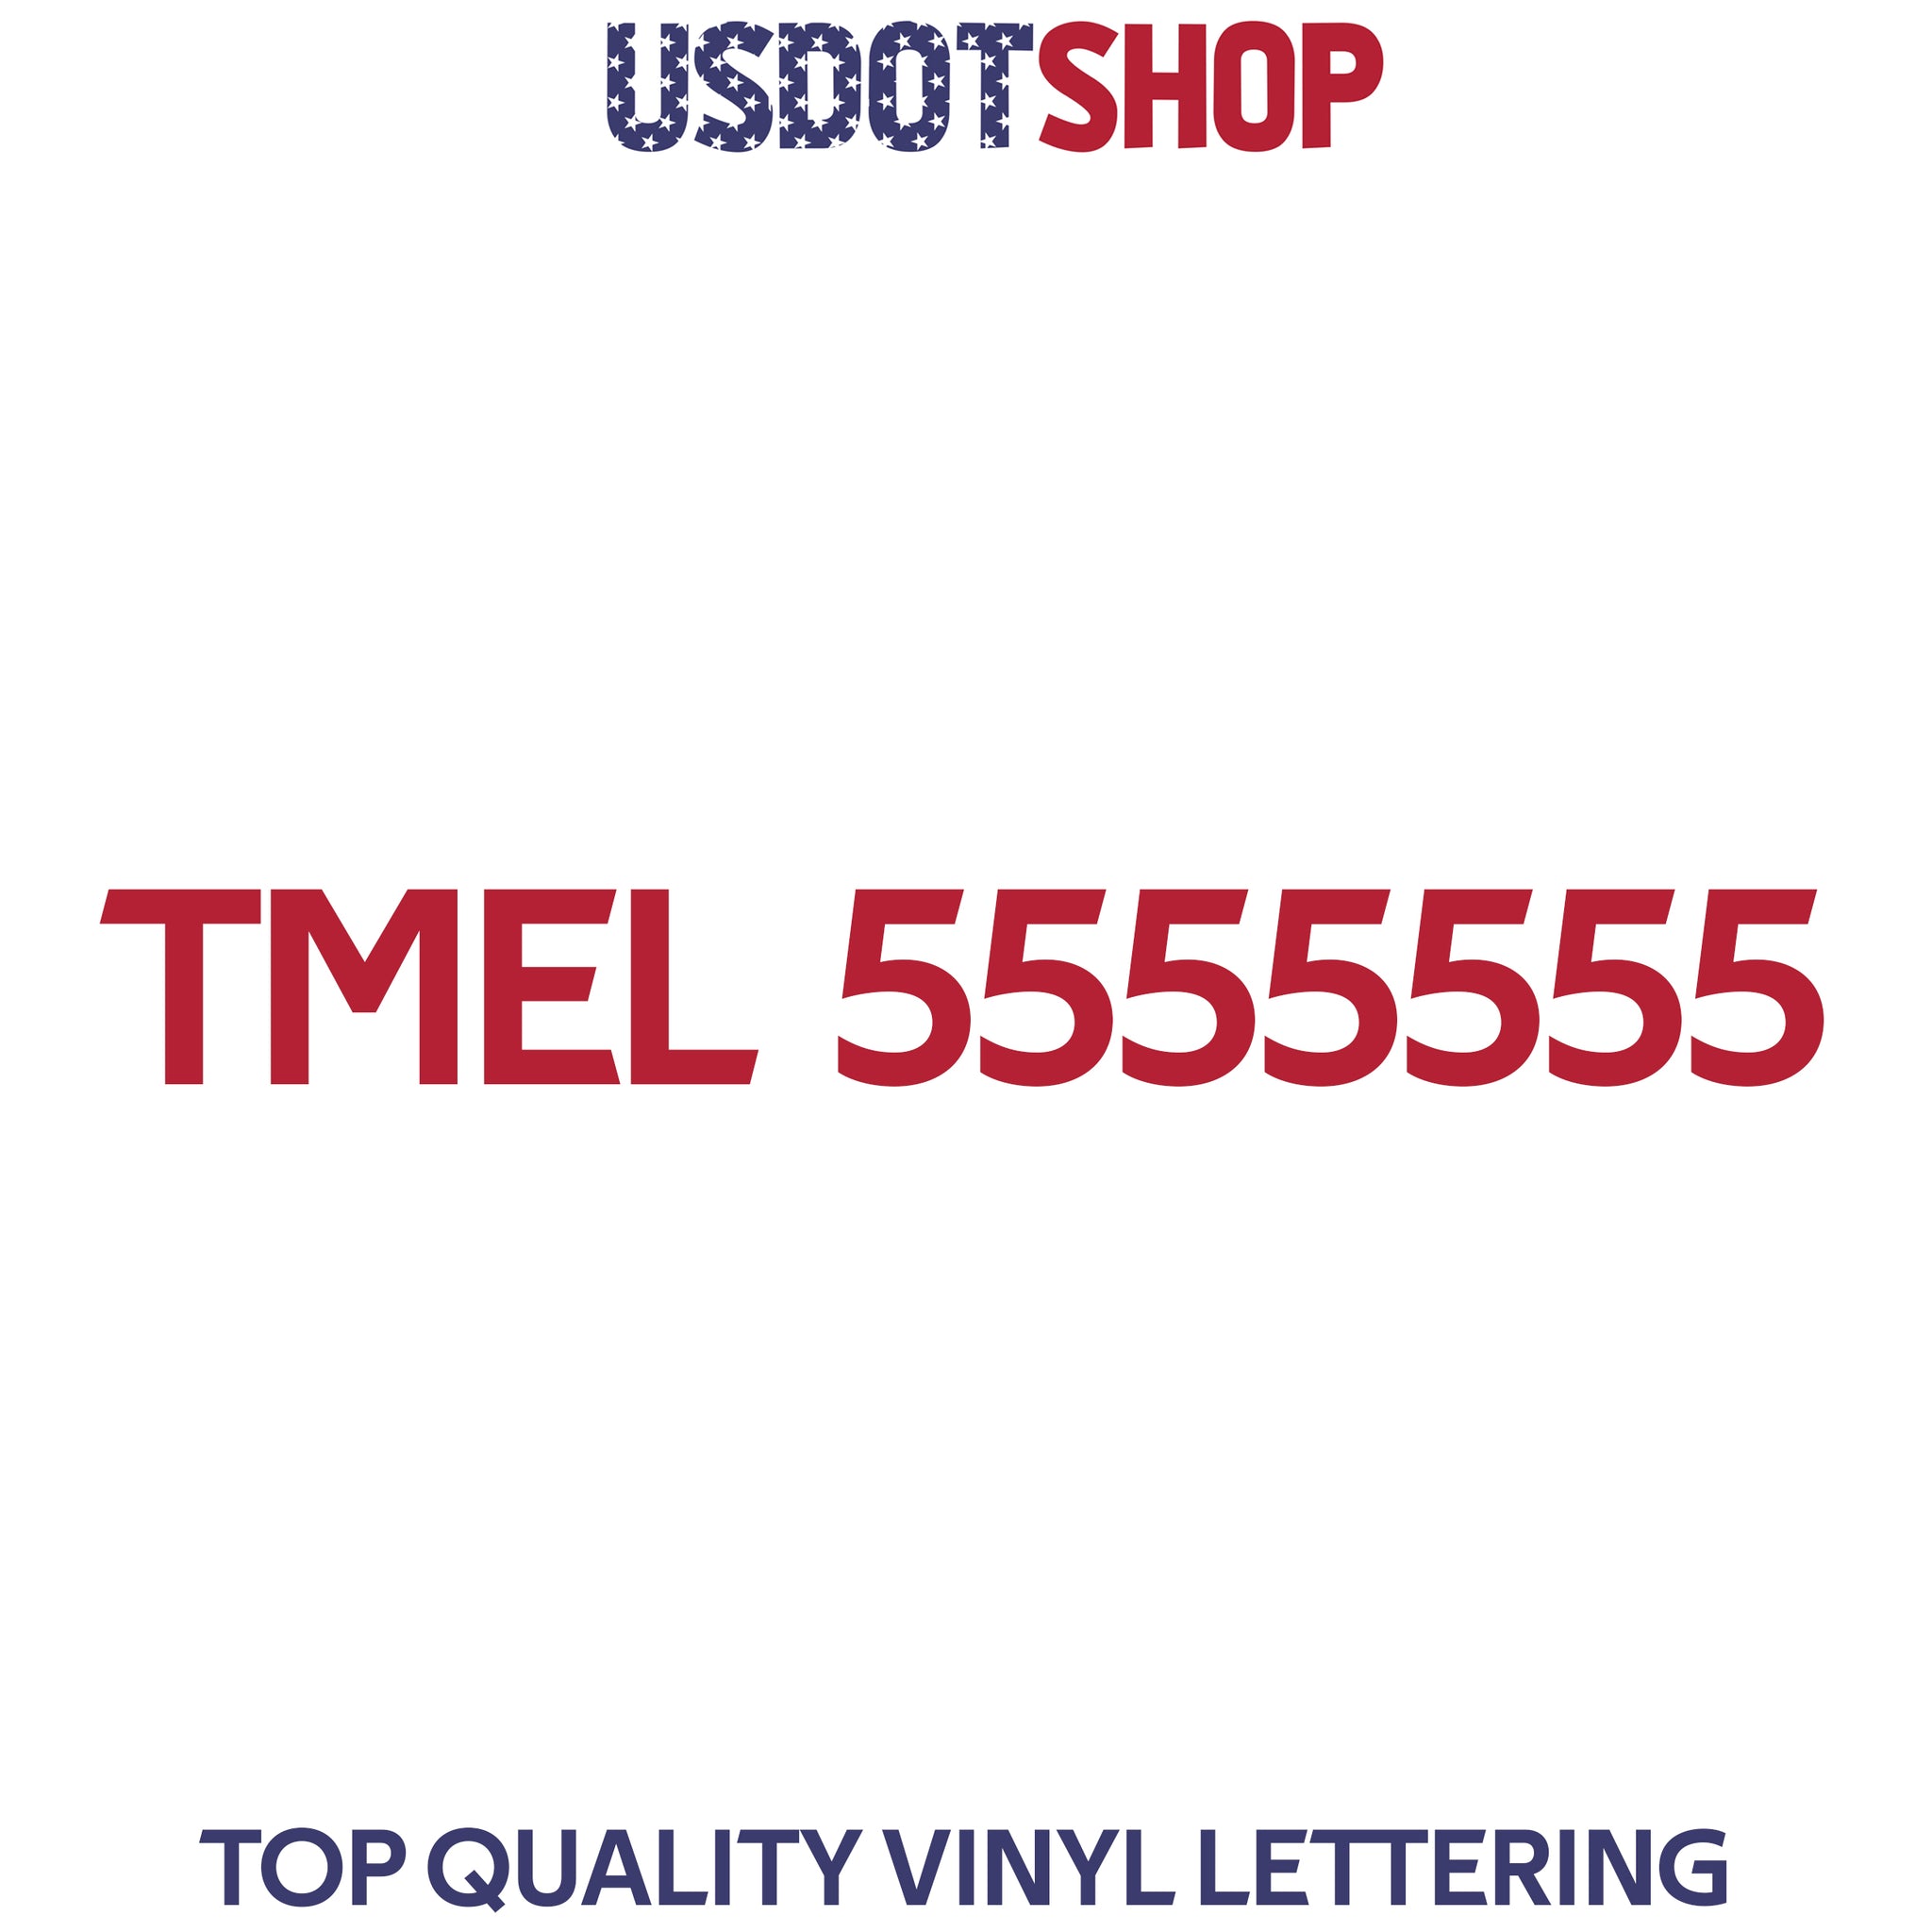 TMEL number sticker